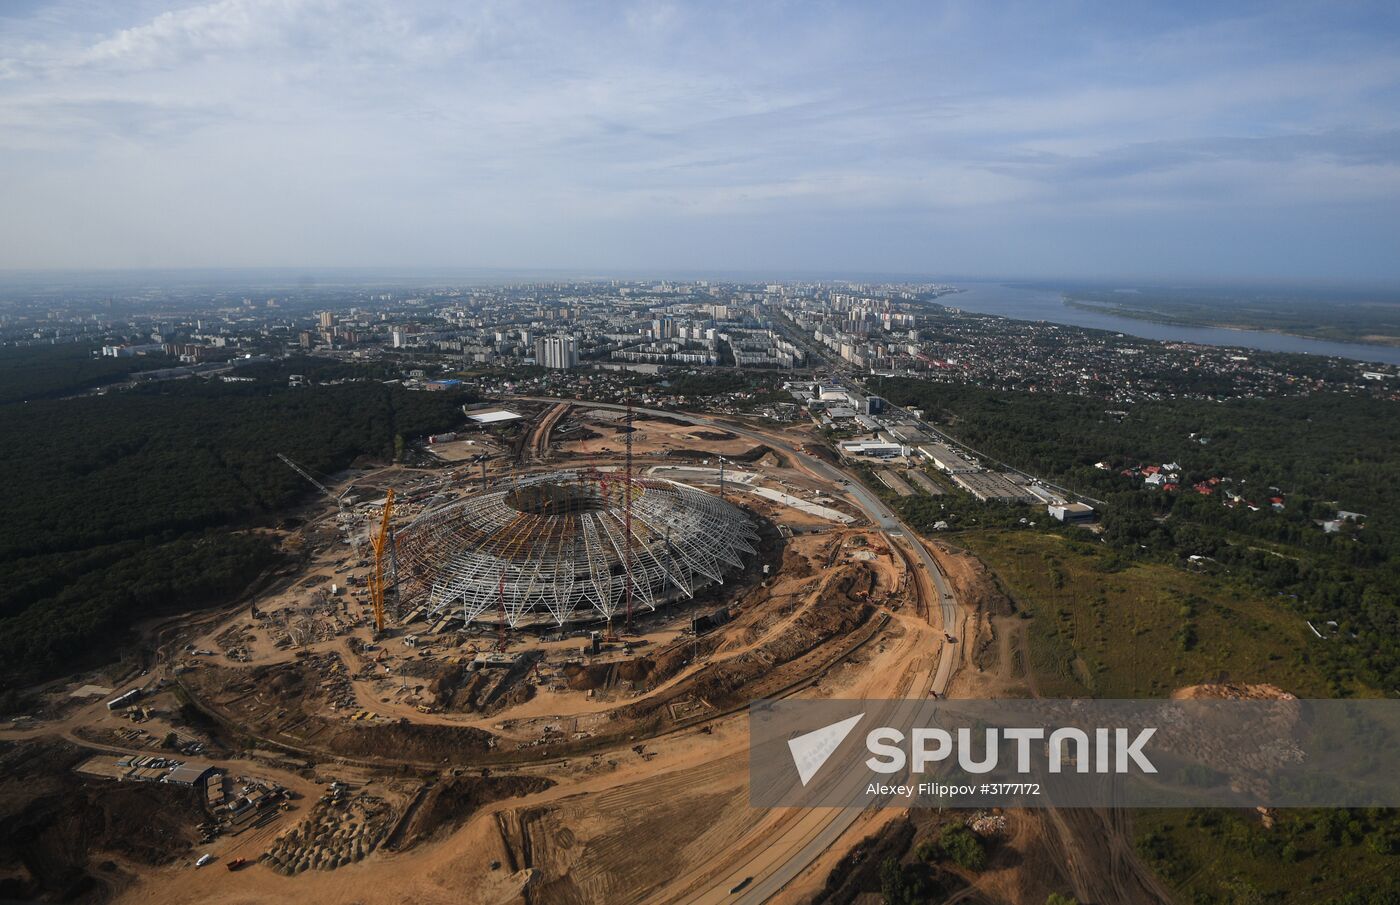 Samara Arena under construction